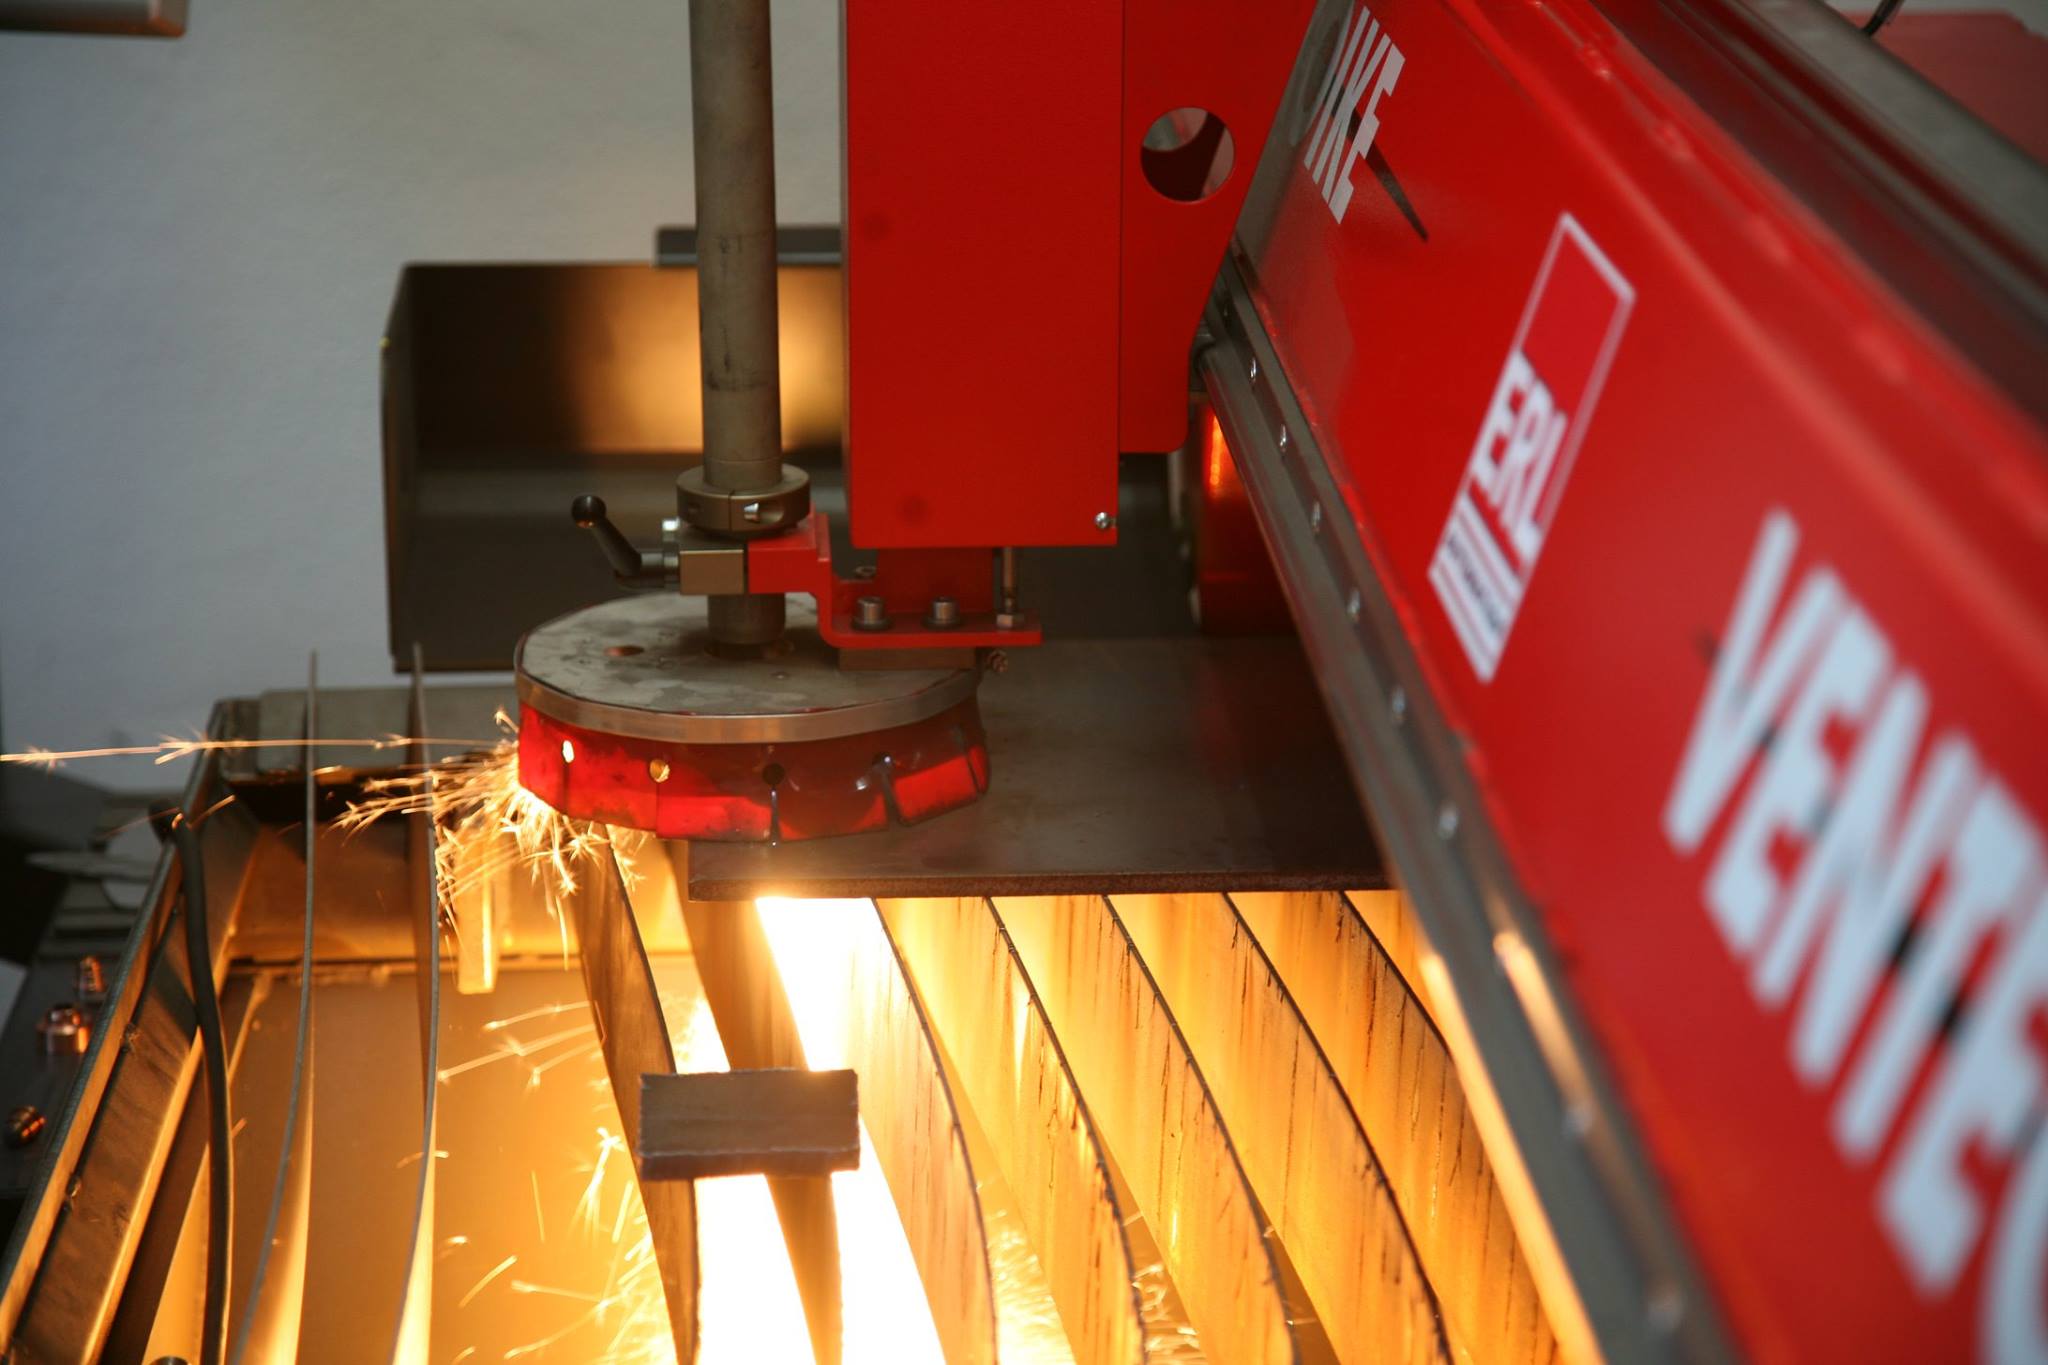 Plasmaschneider beim Schneiden eines Blechs für eine Metall Deko Sonderanfertigungen.